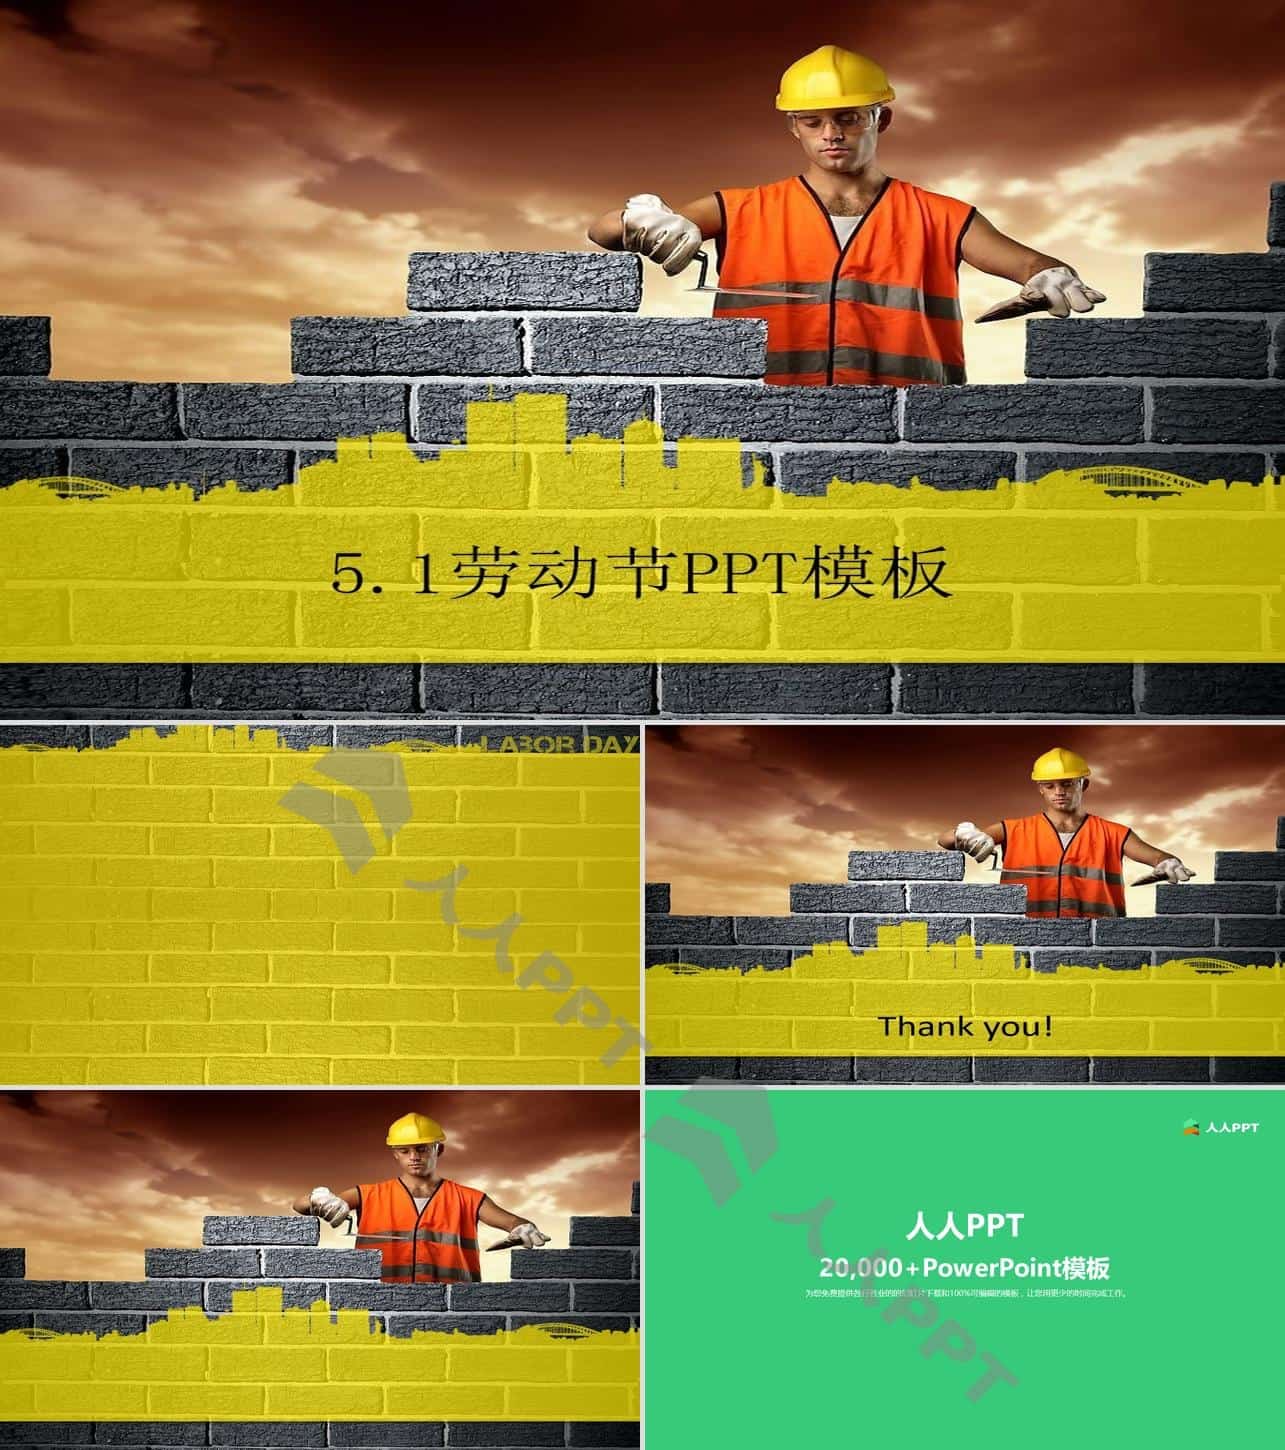 建筑工人正在砌砖――5.1劳动节PPT模板长图